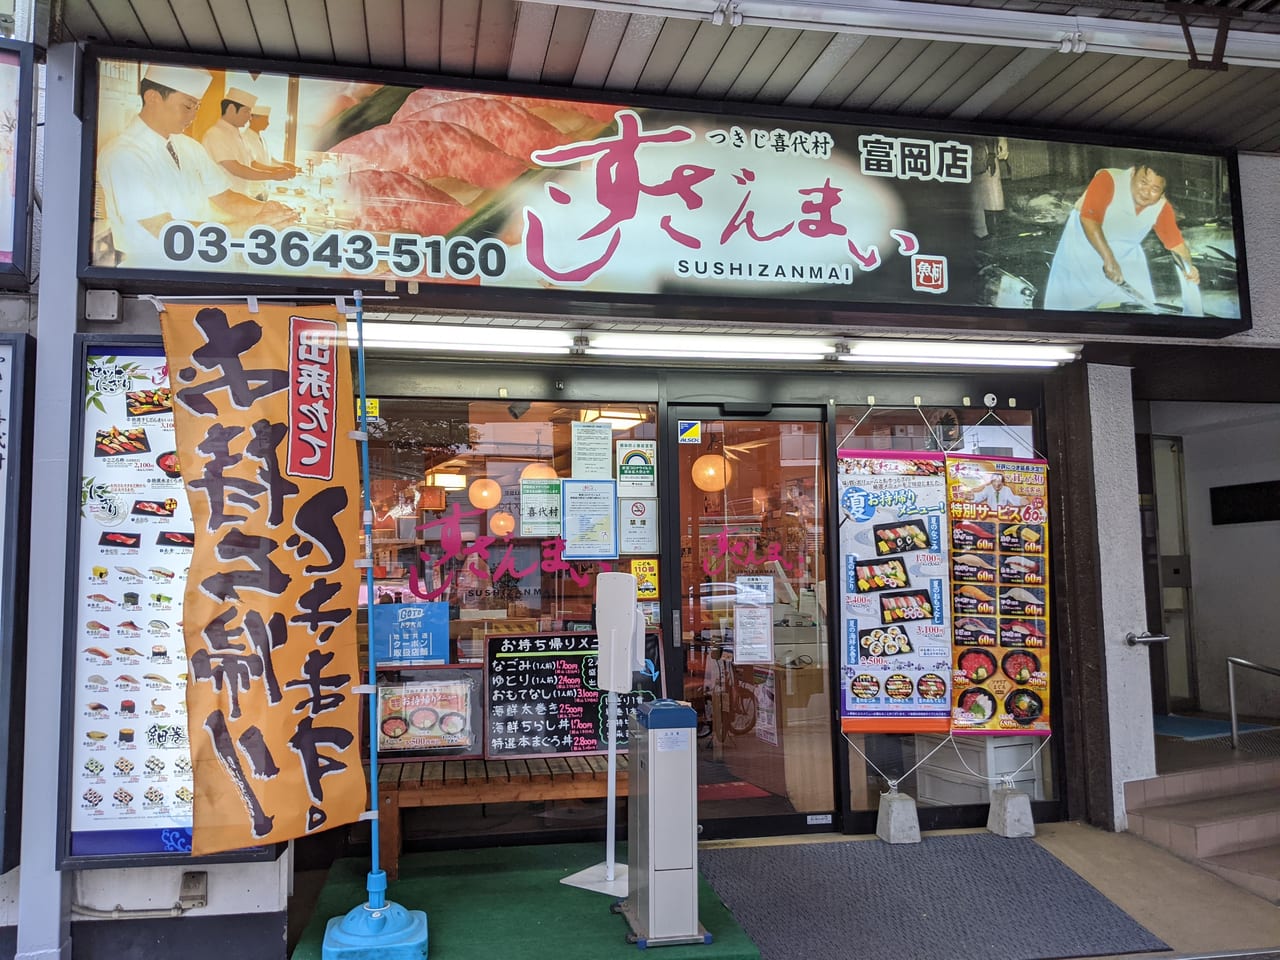 江東区 60円 寿司を食べ尽くしてきました すしざんまい の60円寿司キャンペーンは6月30日まで 号外net 江東区